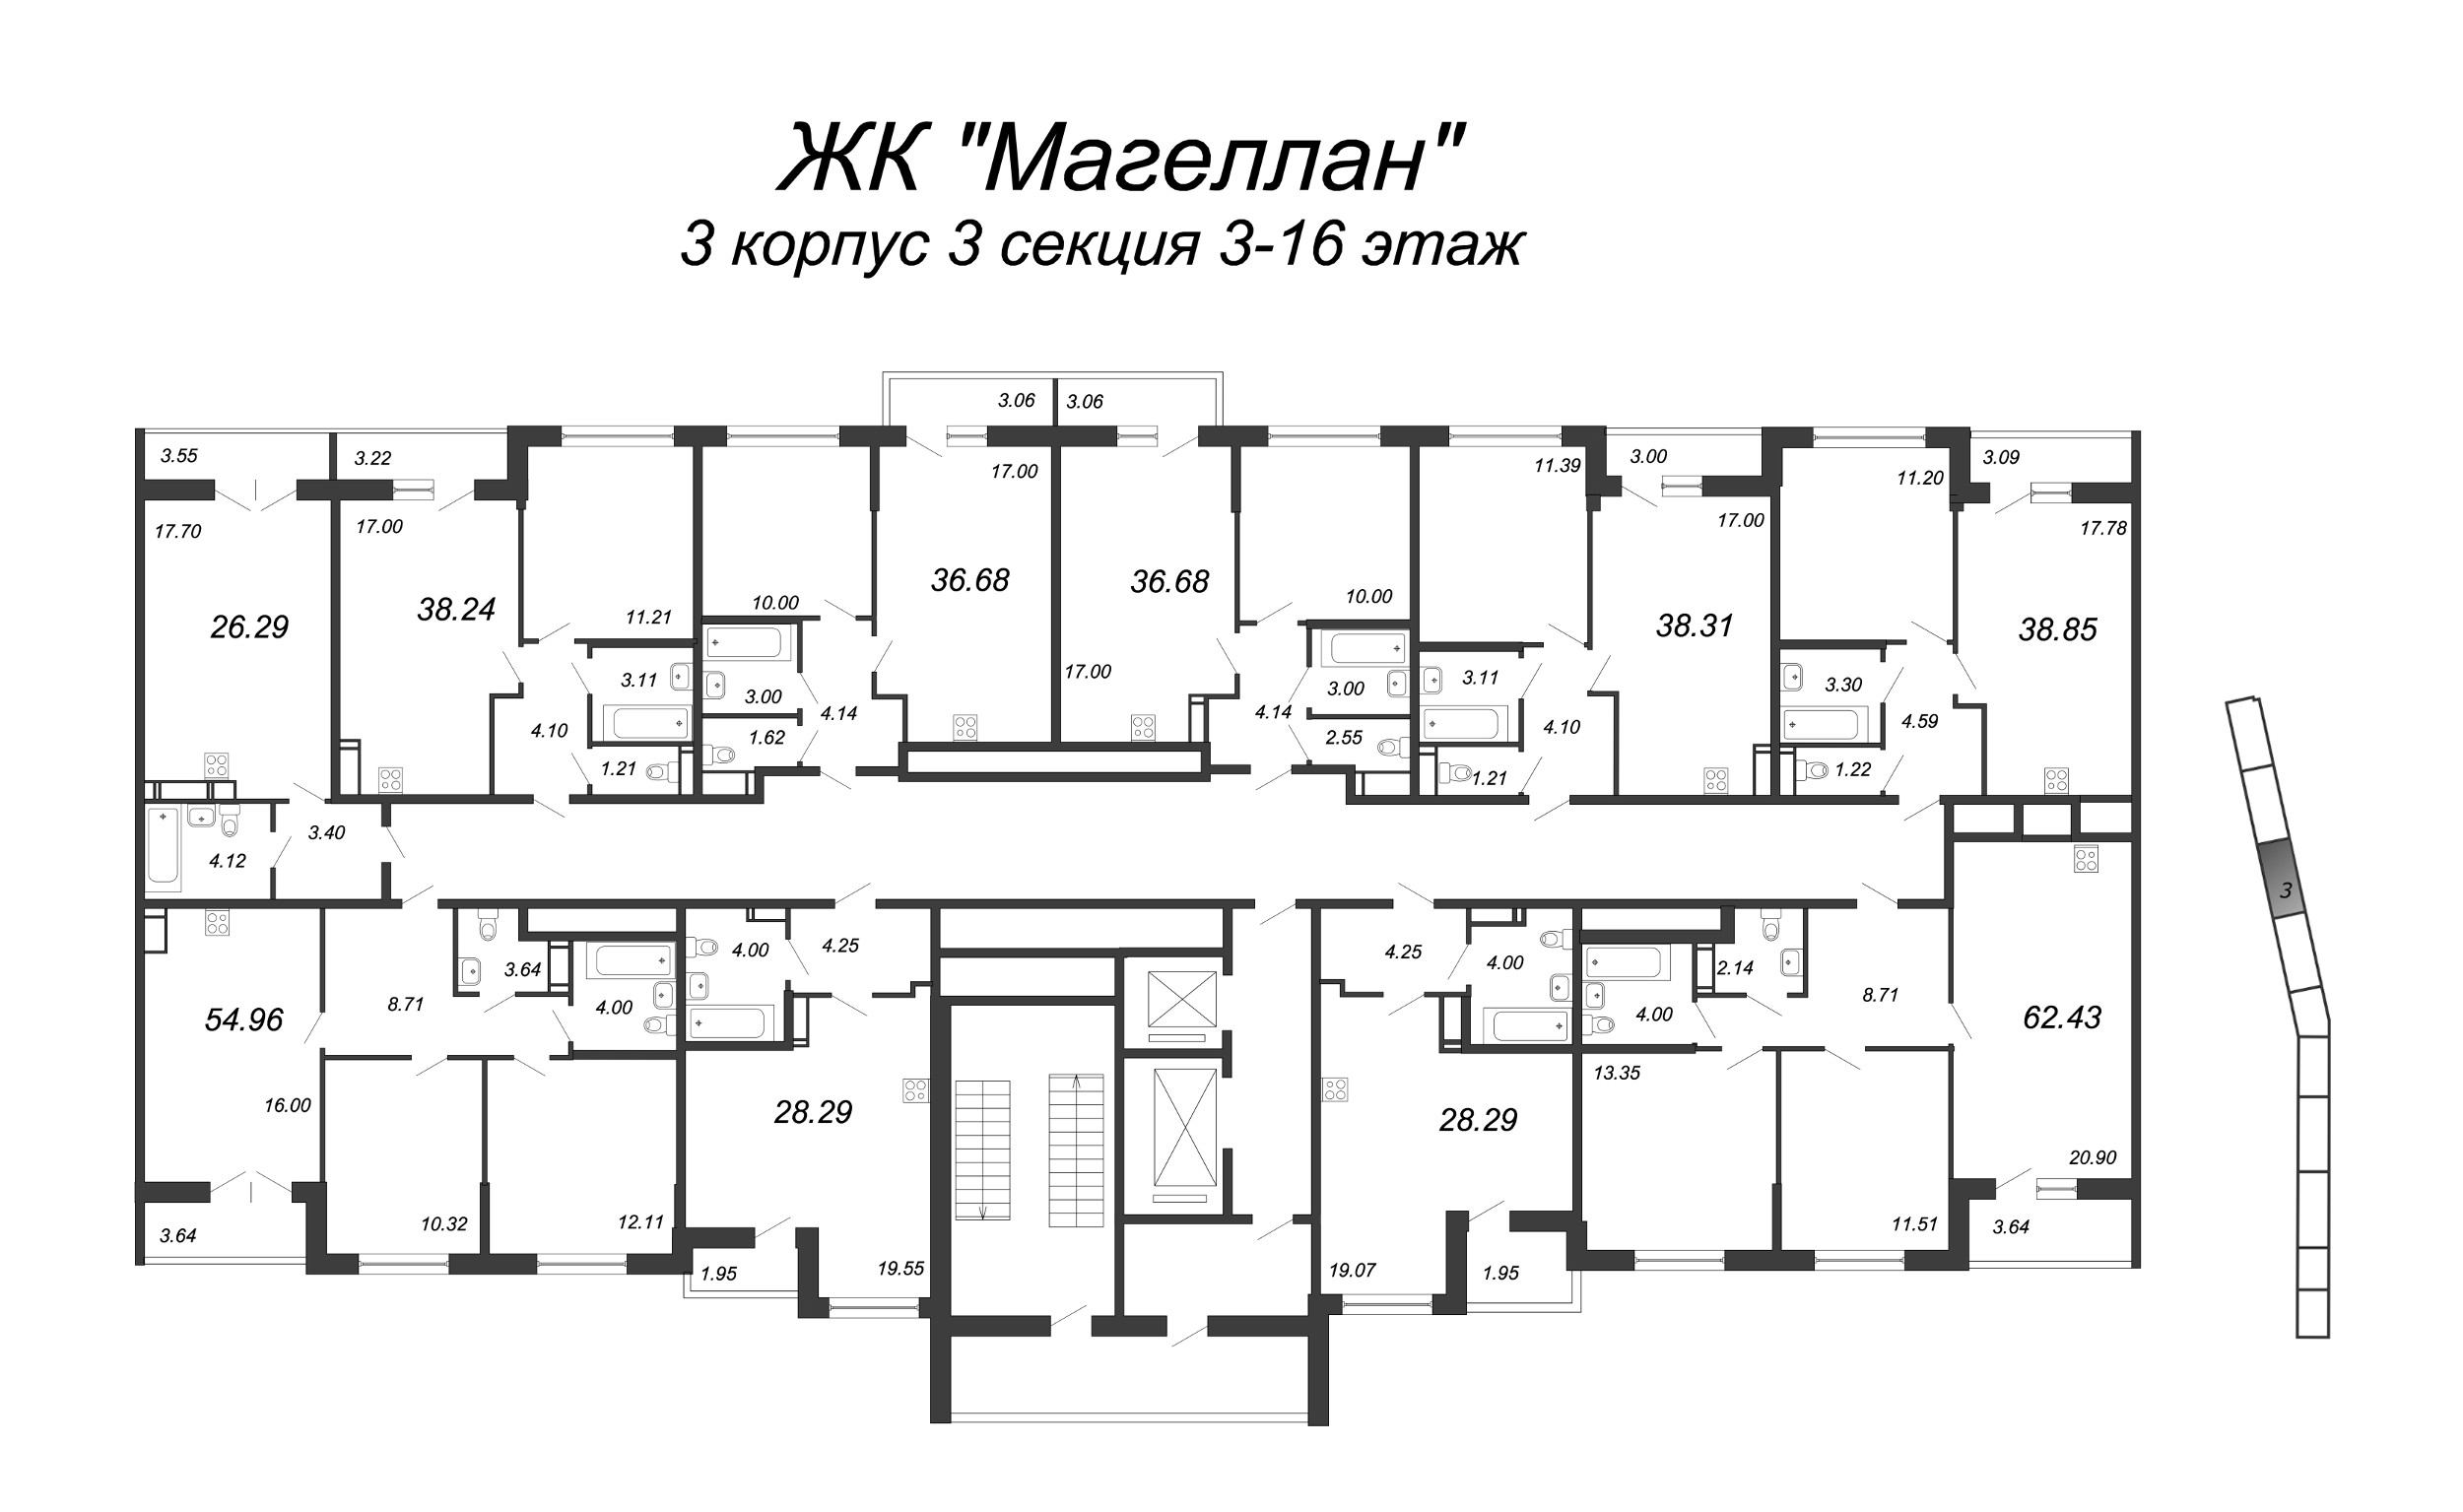 Квартира-студия, 27 м² в ЖК "Магеллан" - планировка этажа